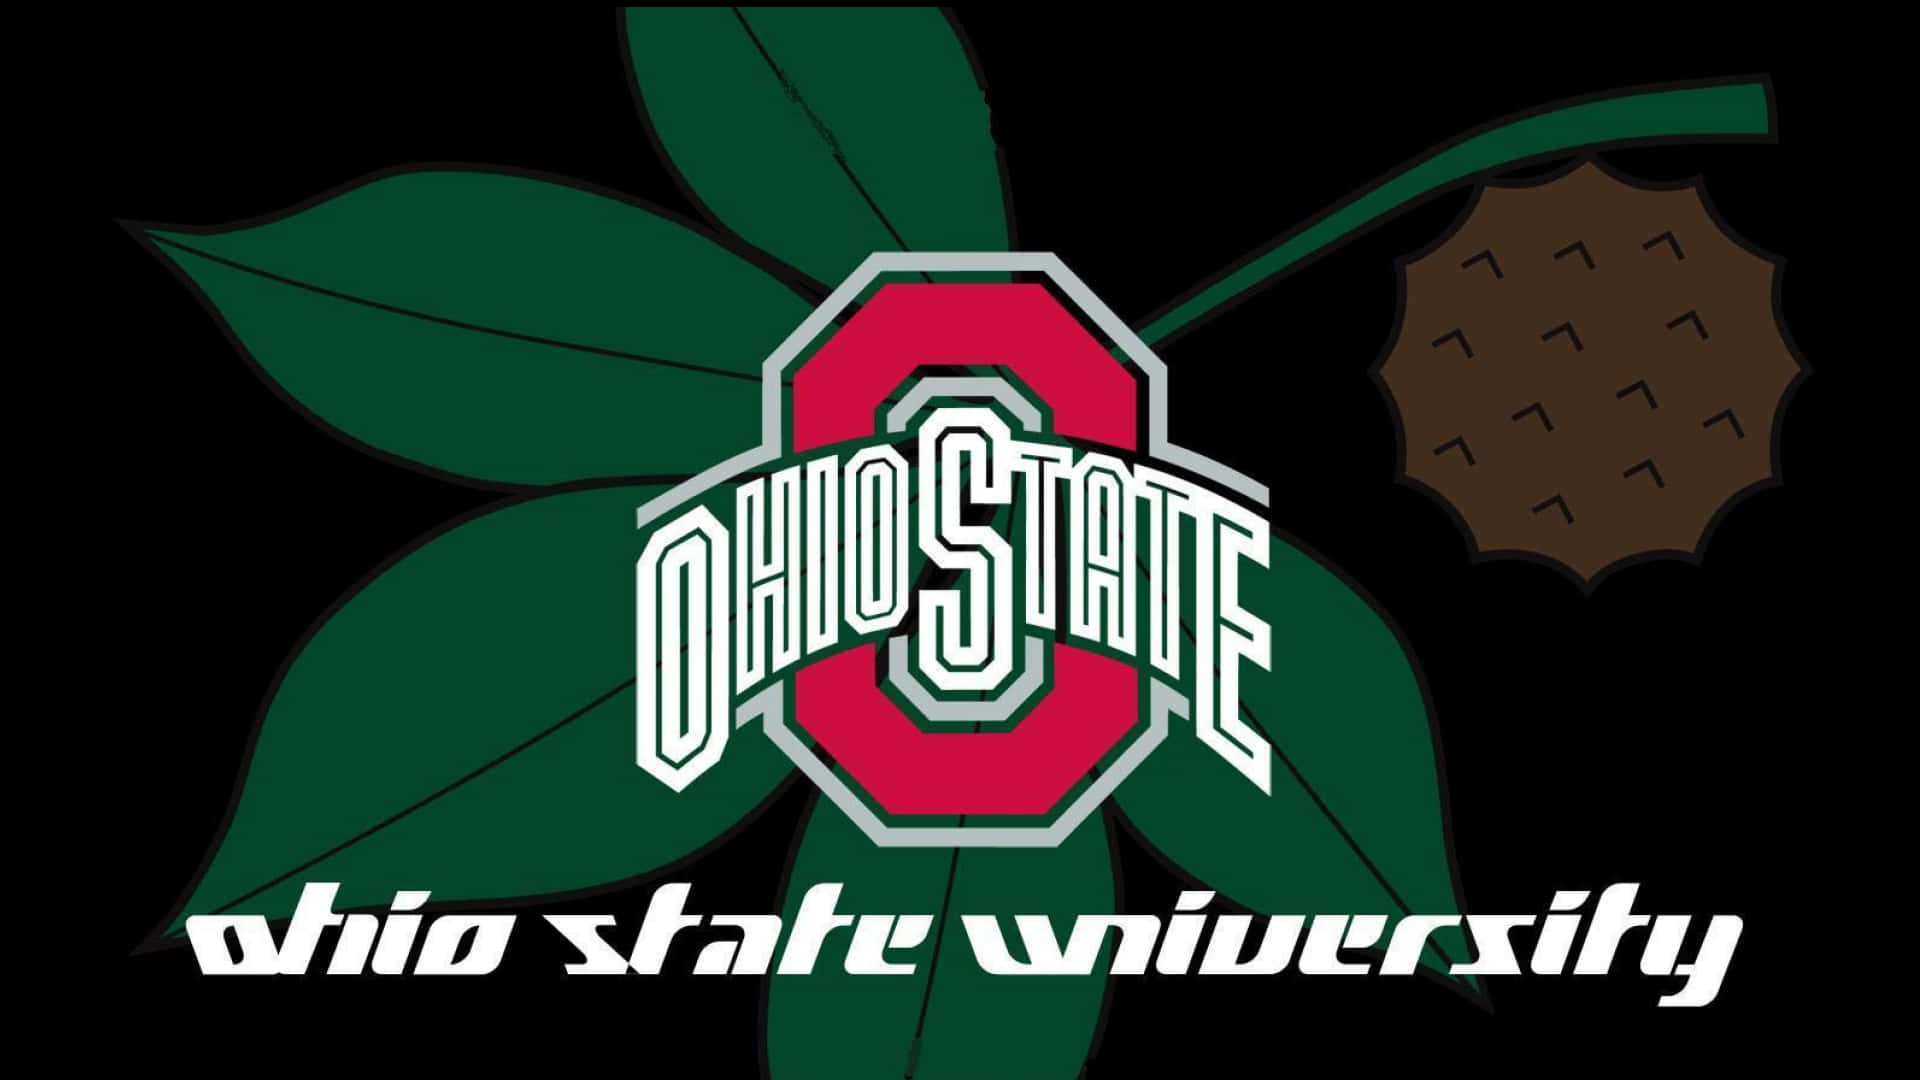 Hojasverdes De Ohio Y Logotipo De La Universidad Estatal De Ohio. Fondo de pantalla